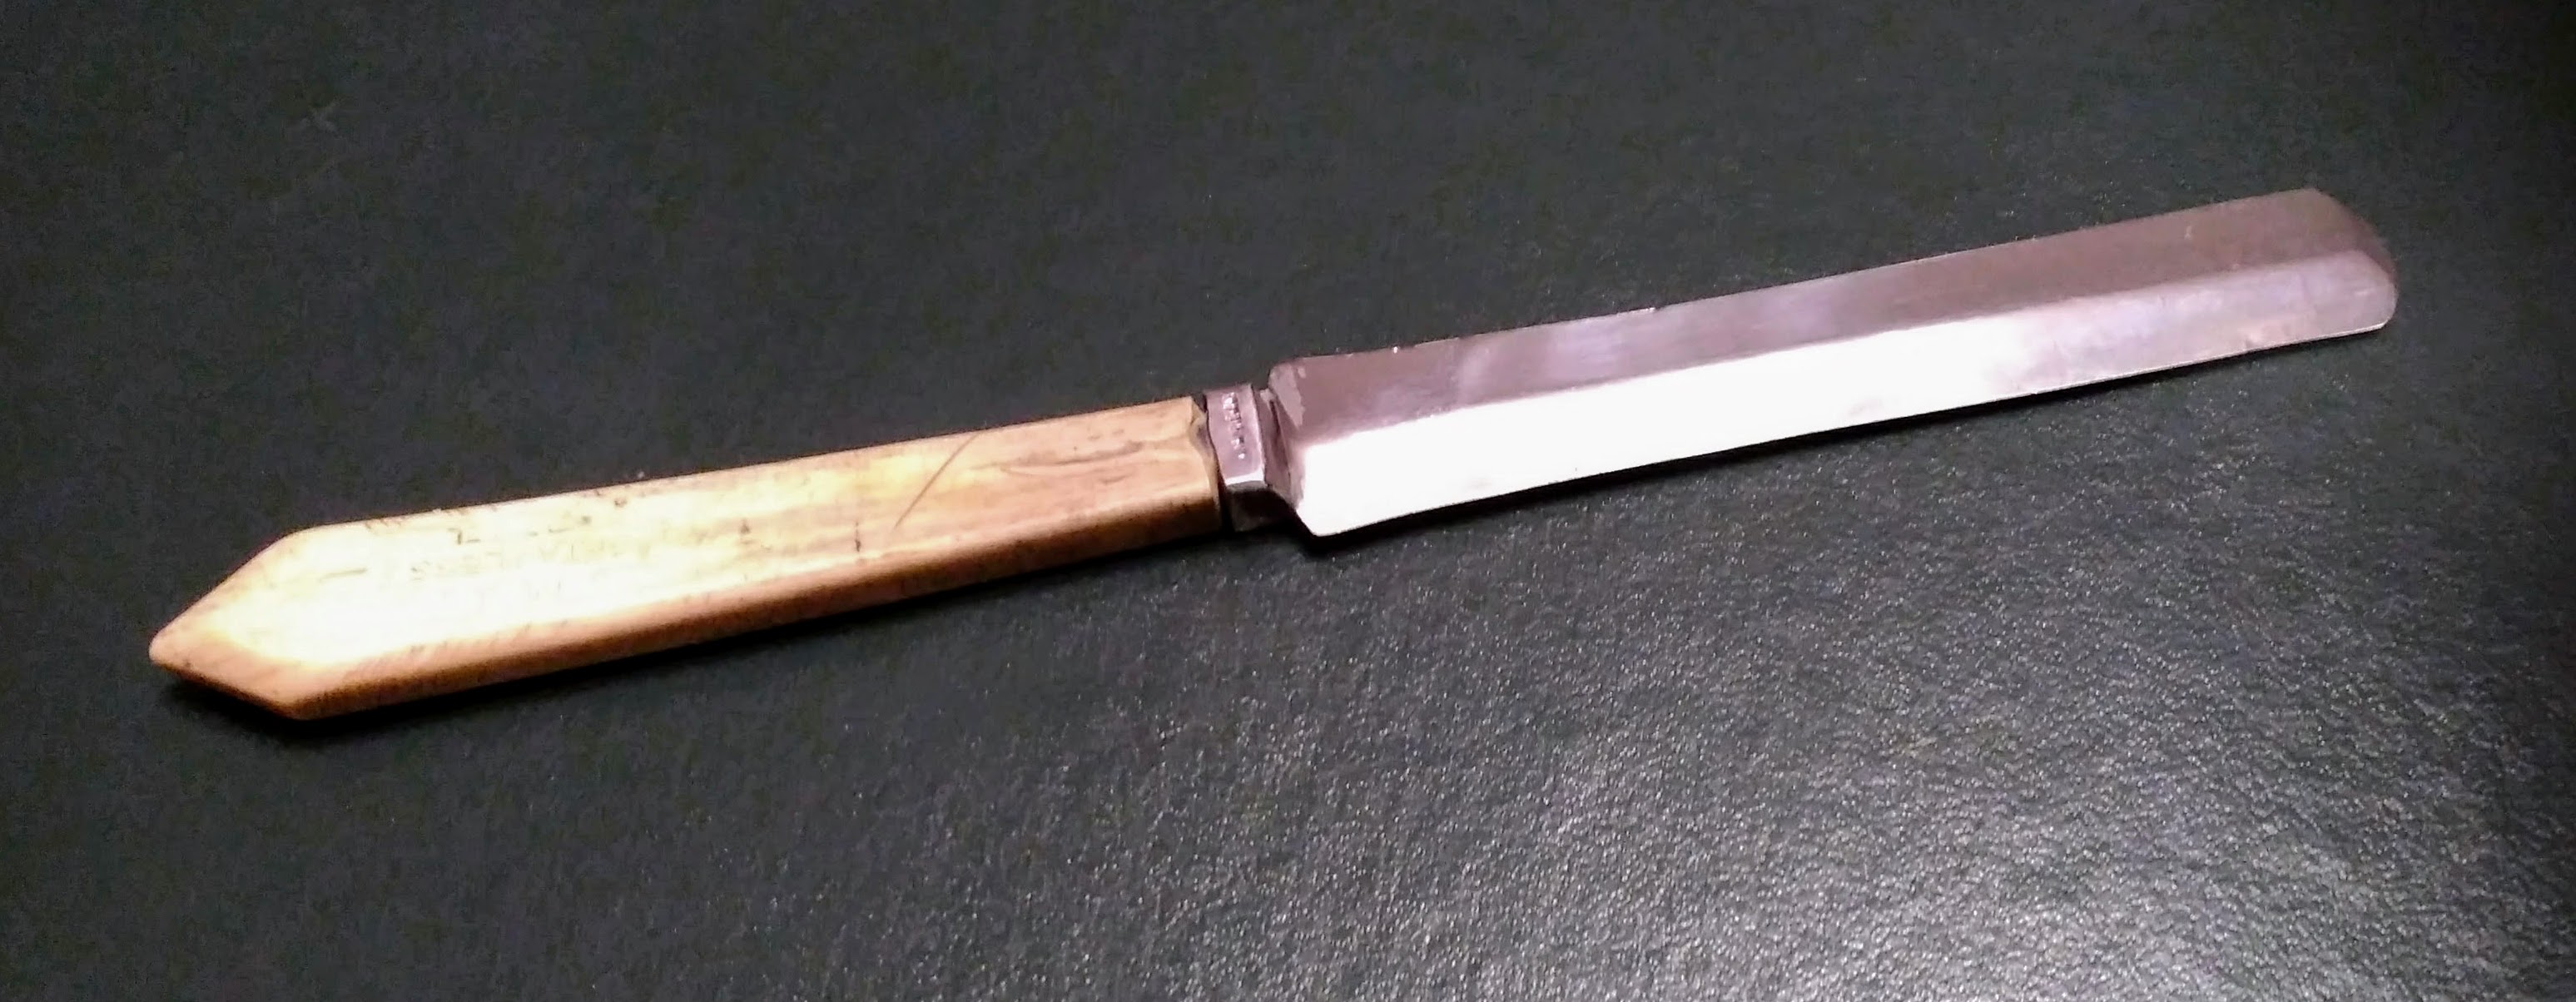 Lublinsky circumcision knife